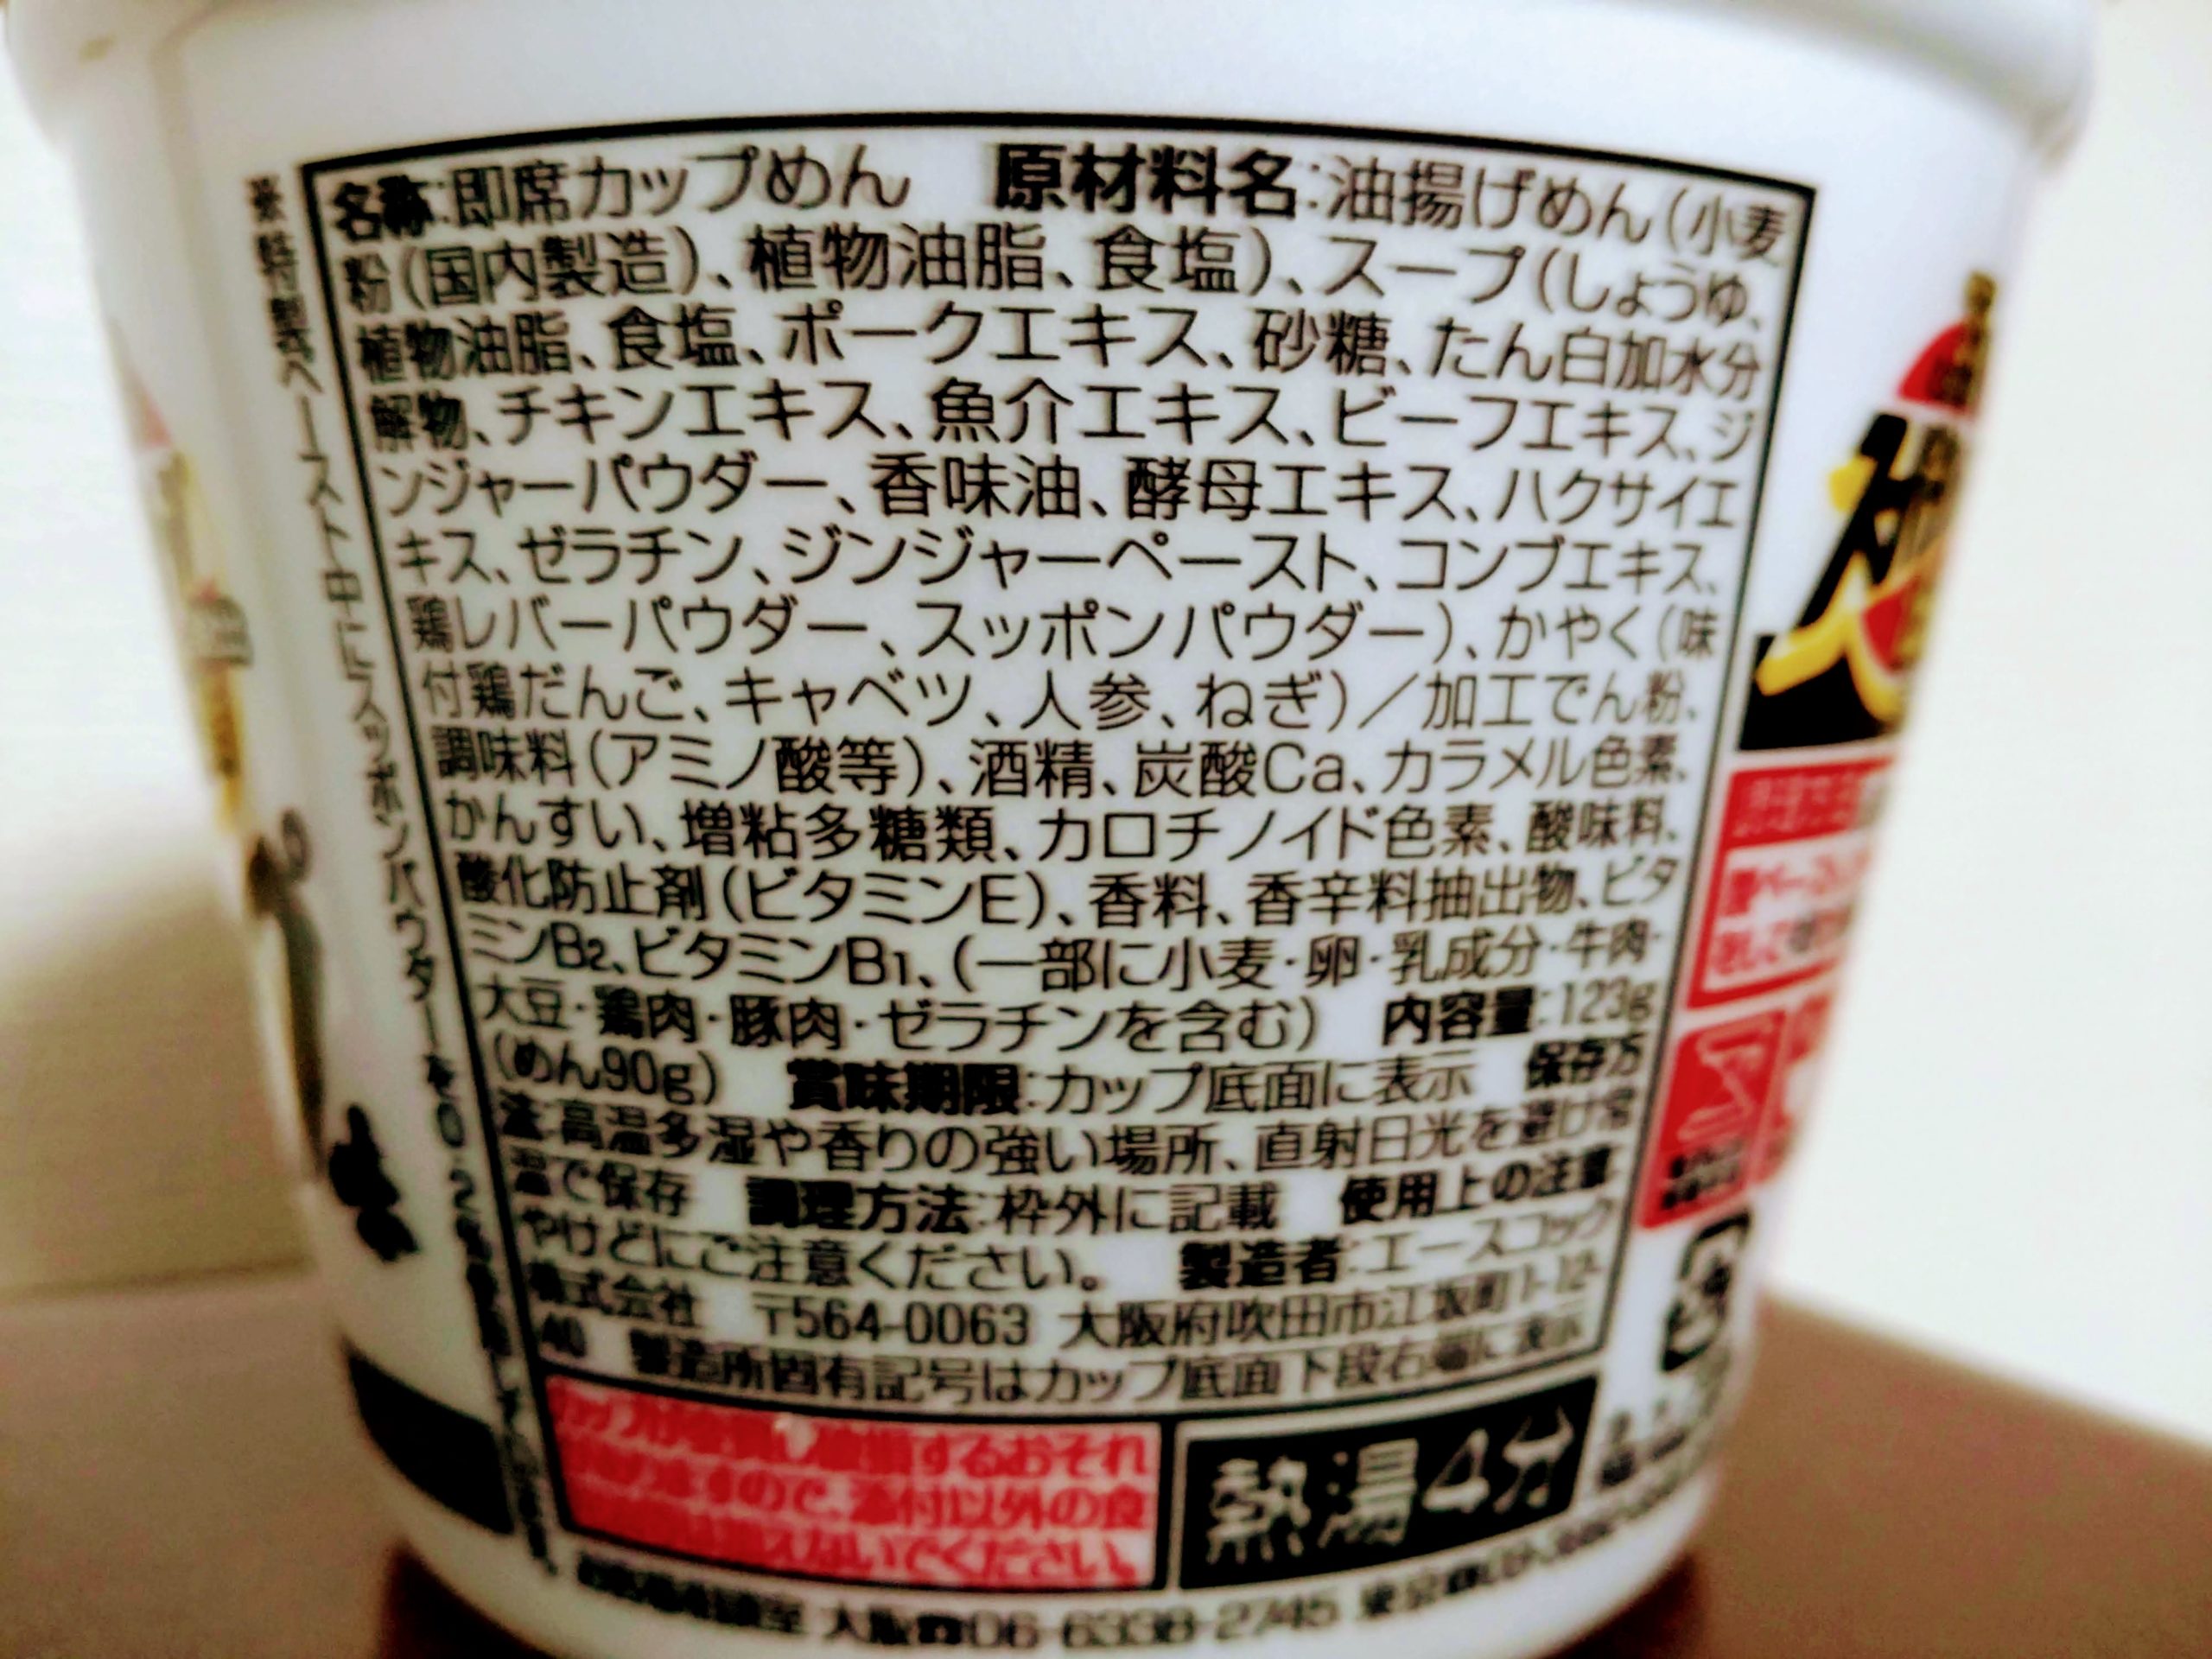 スーパーカップ1.5倍 スッポンスープ味ラーメンの食品表示